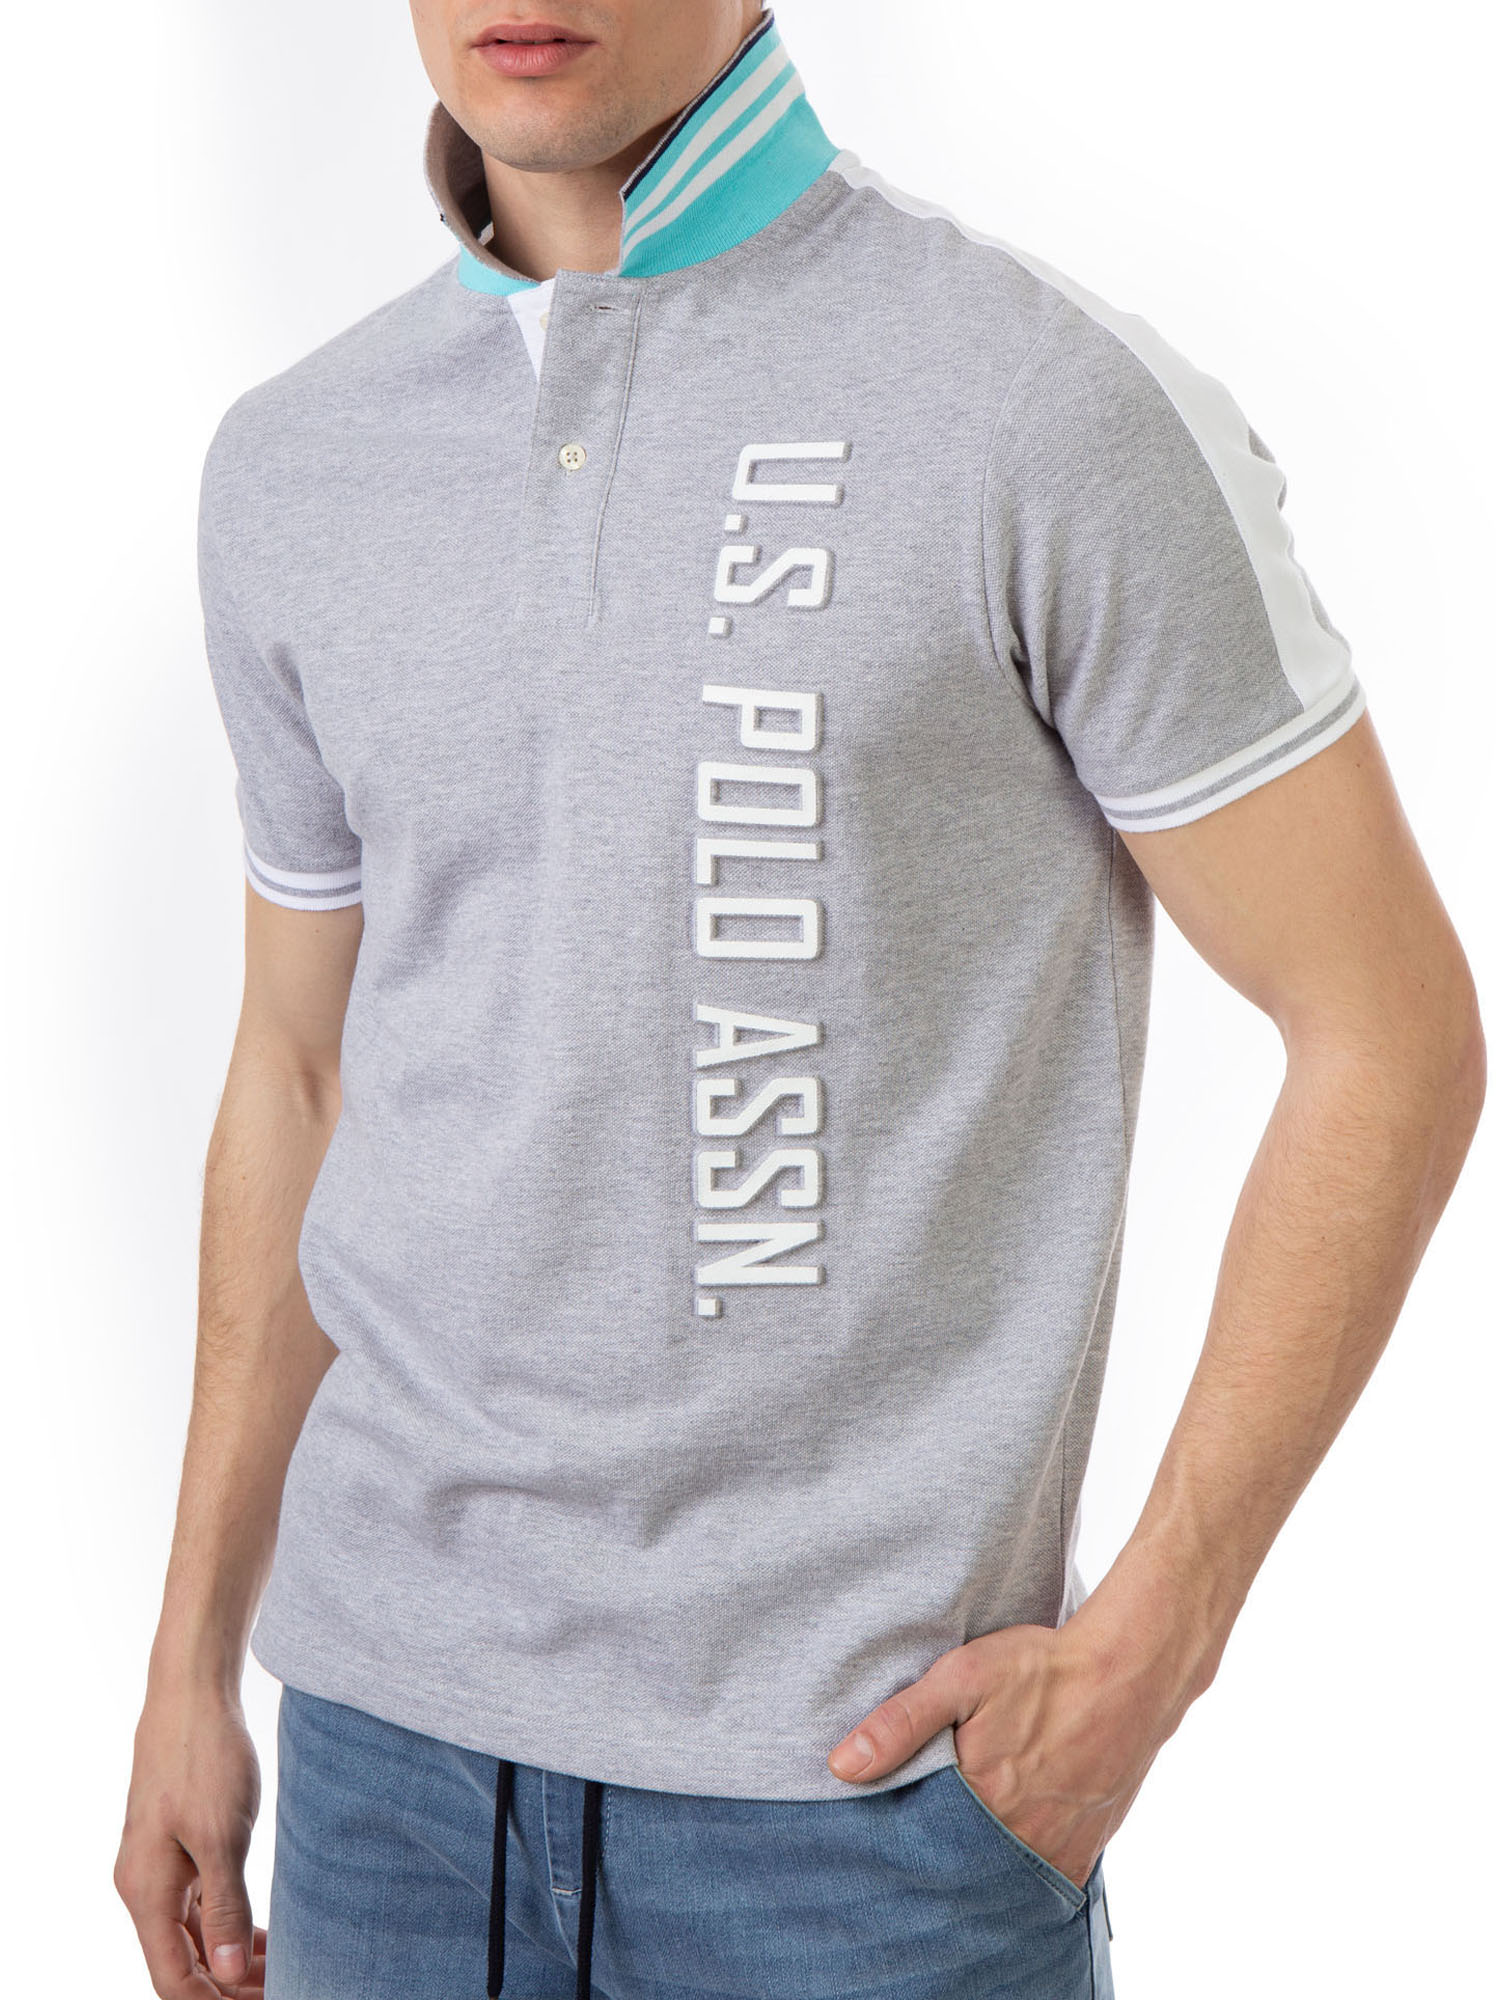 U.S. Polo Assn. Men's Embossed Logo Pique Polo Shirt - image 5 of 5